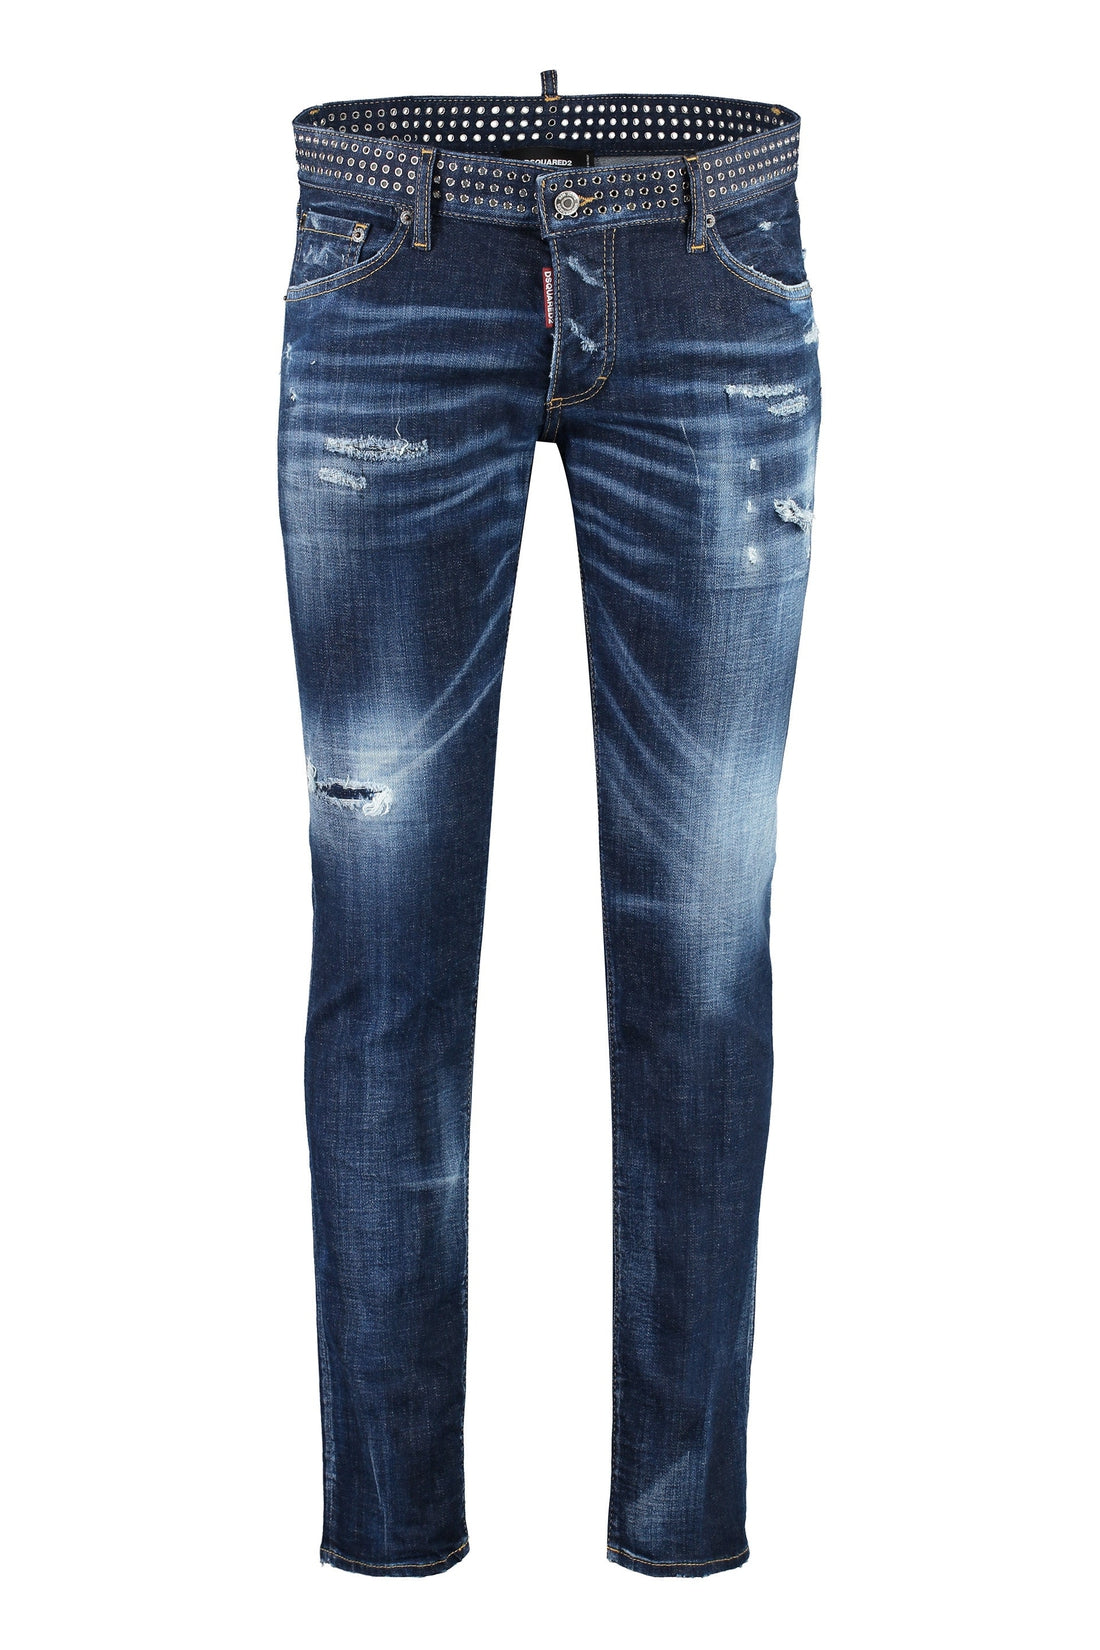 Dsquared2-OUTLET-SALE-Sexy Dean jeans-ARCHIVIST